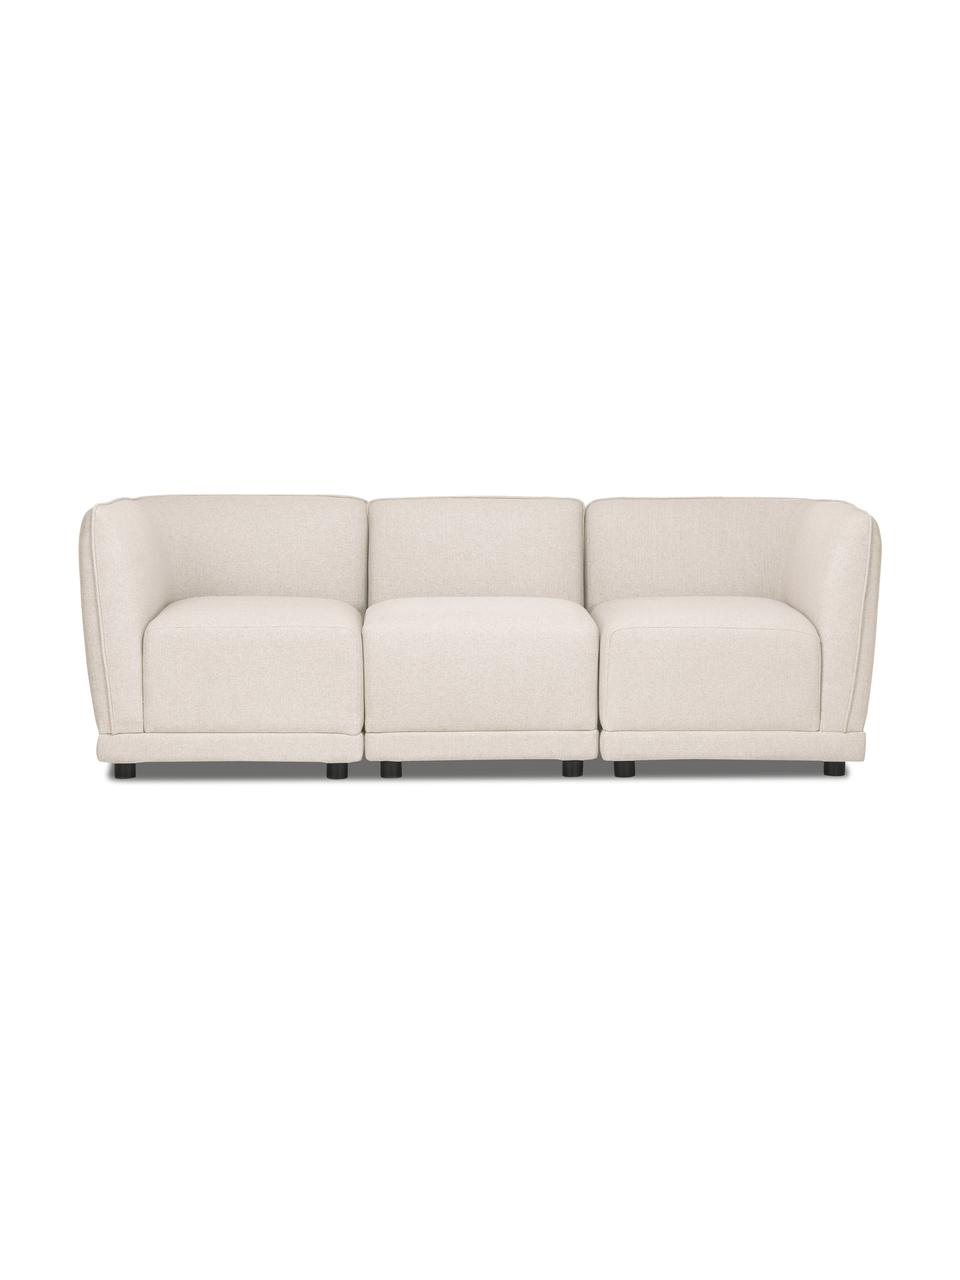 Modulares 3-Sitzer Sofa Ari in Beige, Bezug: 100% Polyester Der hochwe, Gestell: Massivholz, Sperrholz, Webstoff Beige, B 228 x T 77 cm